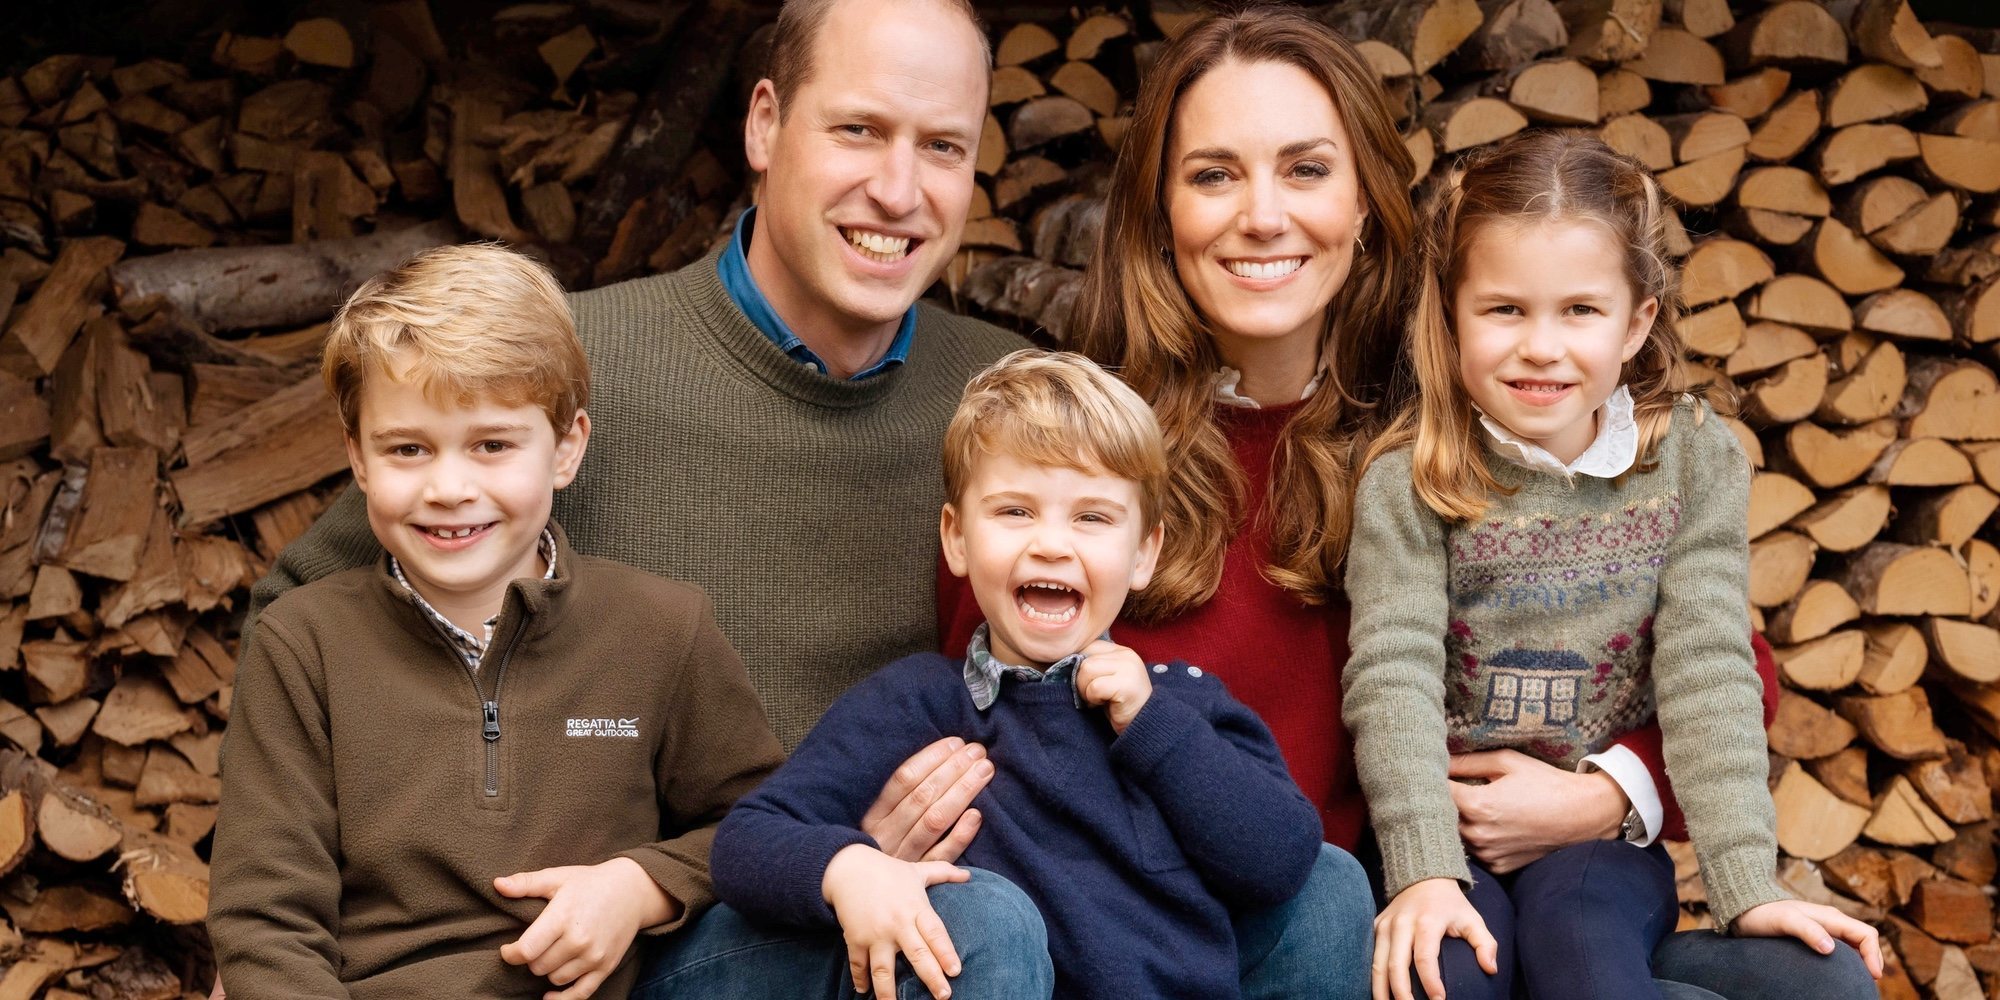 El emotivo vídeo del Príncipe Guillermo y Kate Middleton con sus hijos Jorge, Carlota y Luis para celebrar su aniversario